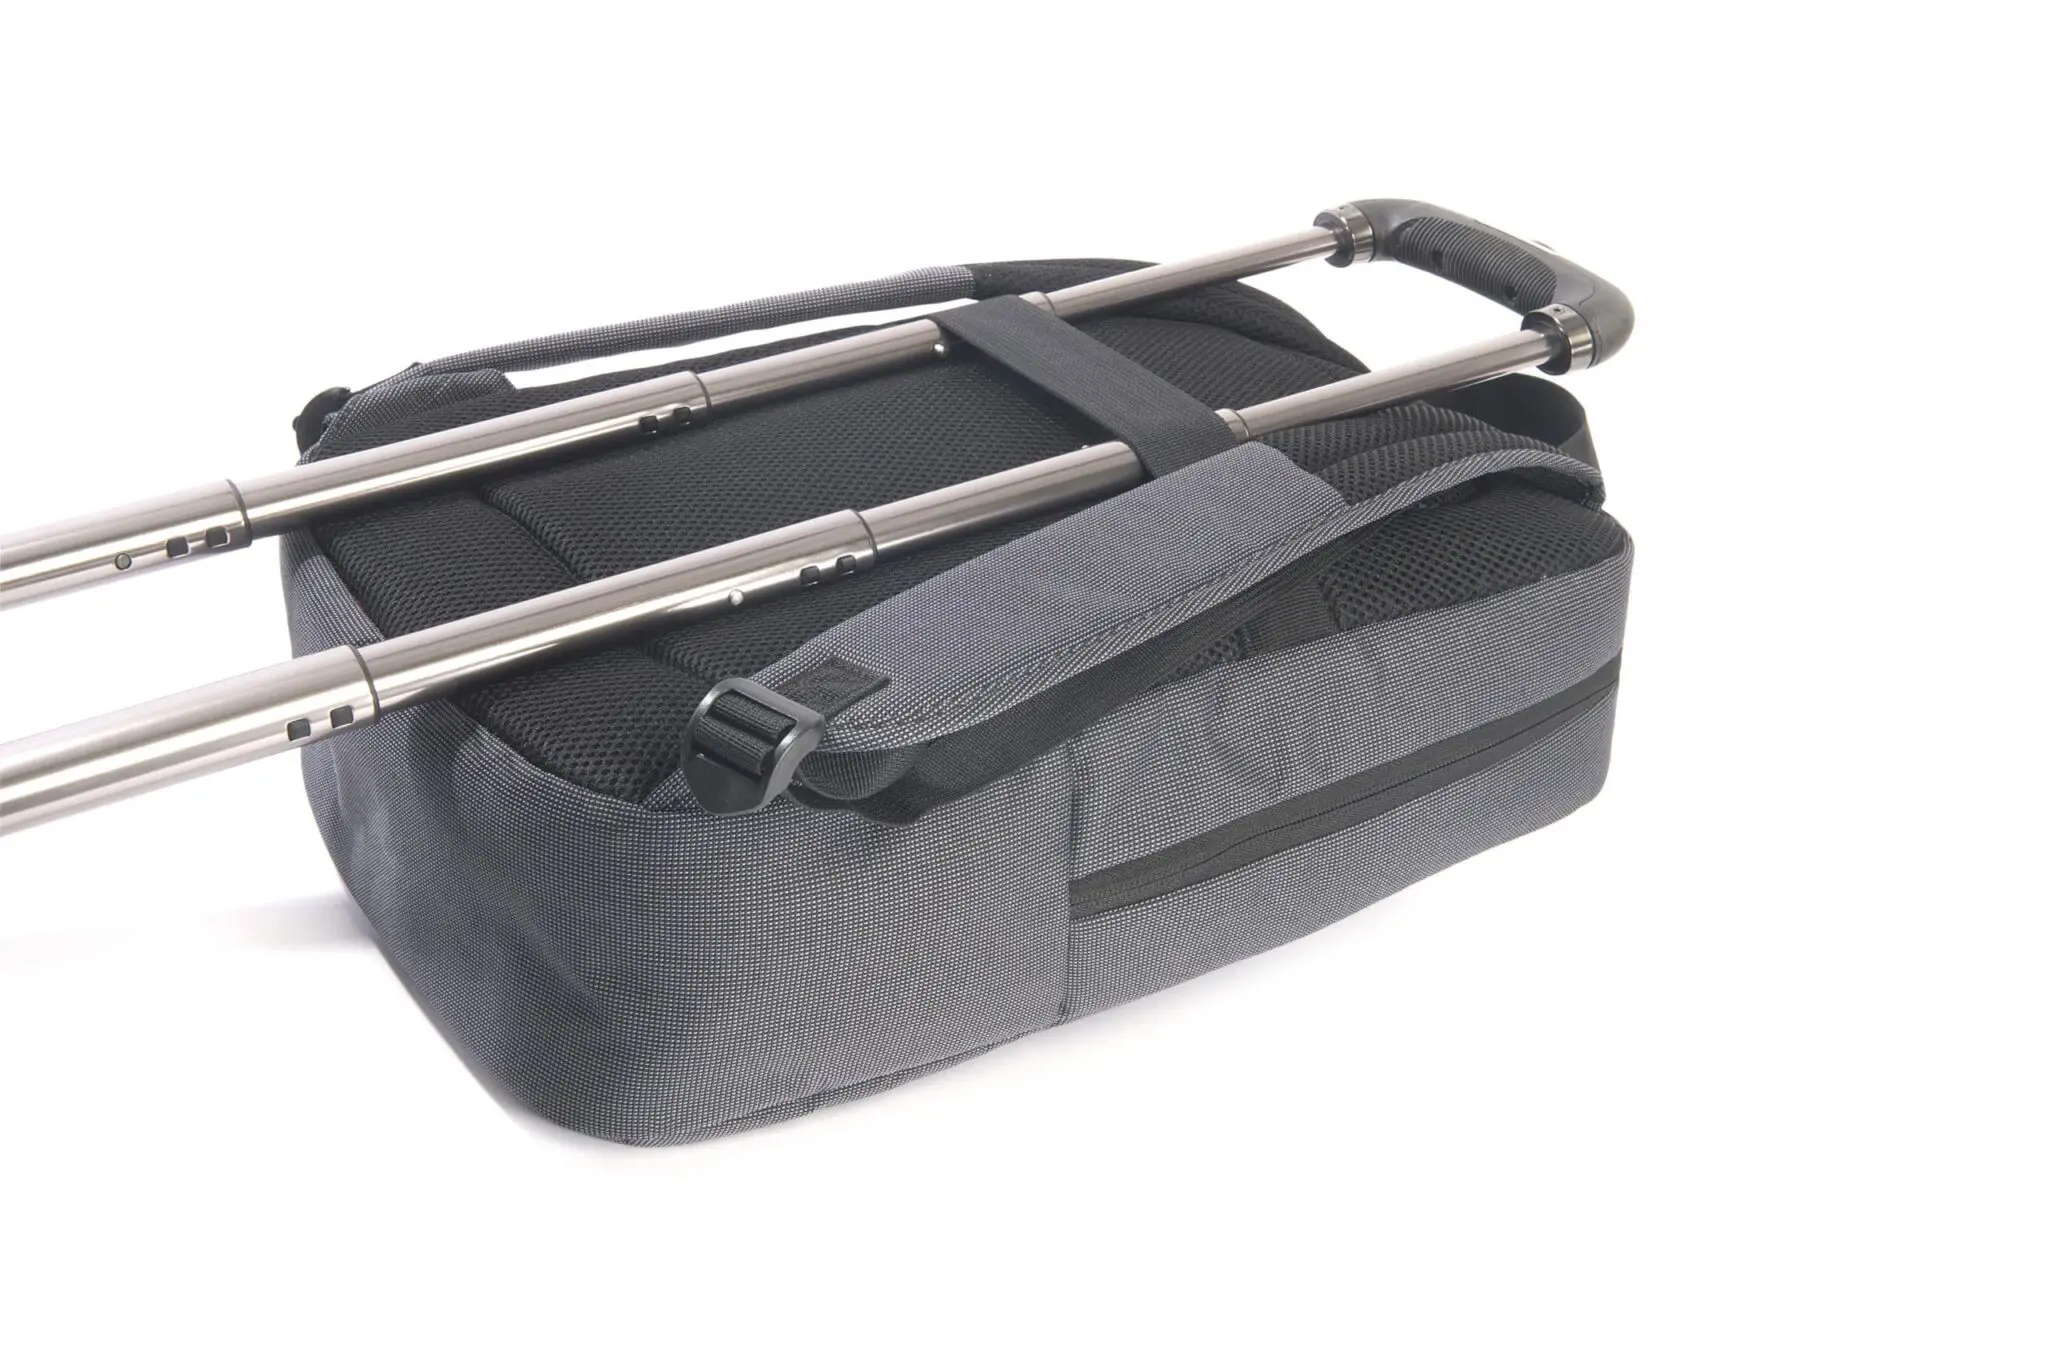 กระเป๋าเป้ Tucano รุ่น Loop Backpack - MacBook Pro 13" / Notebook up to 15.6" - ดำ